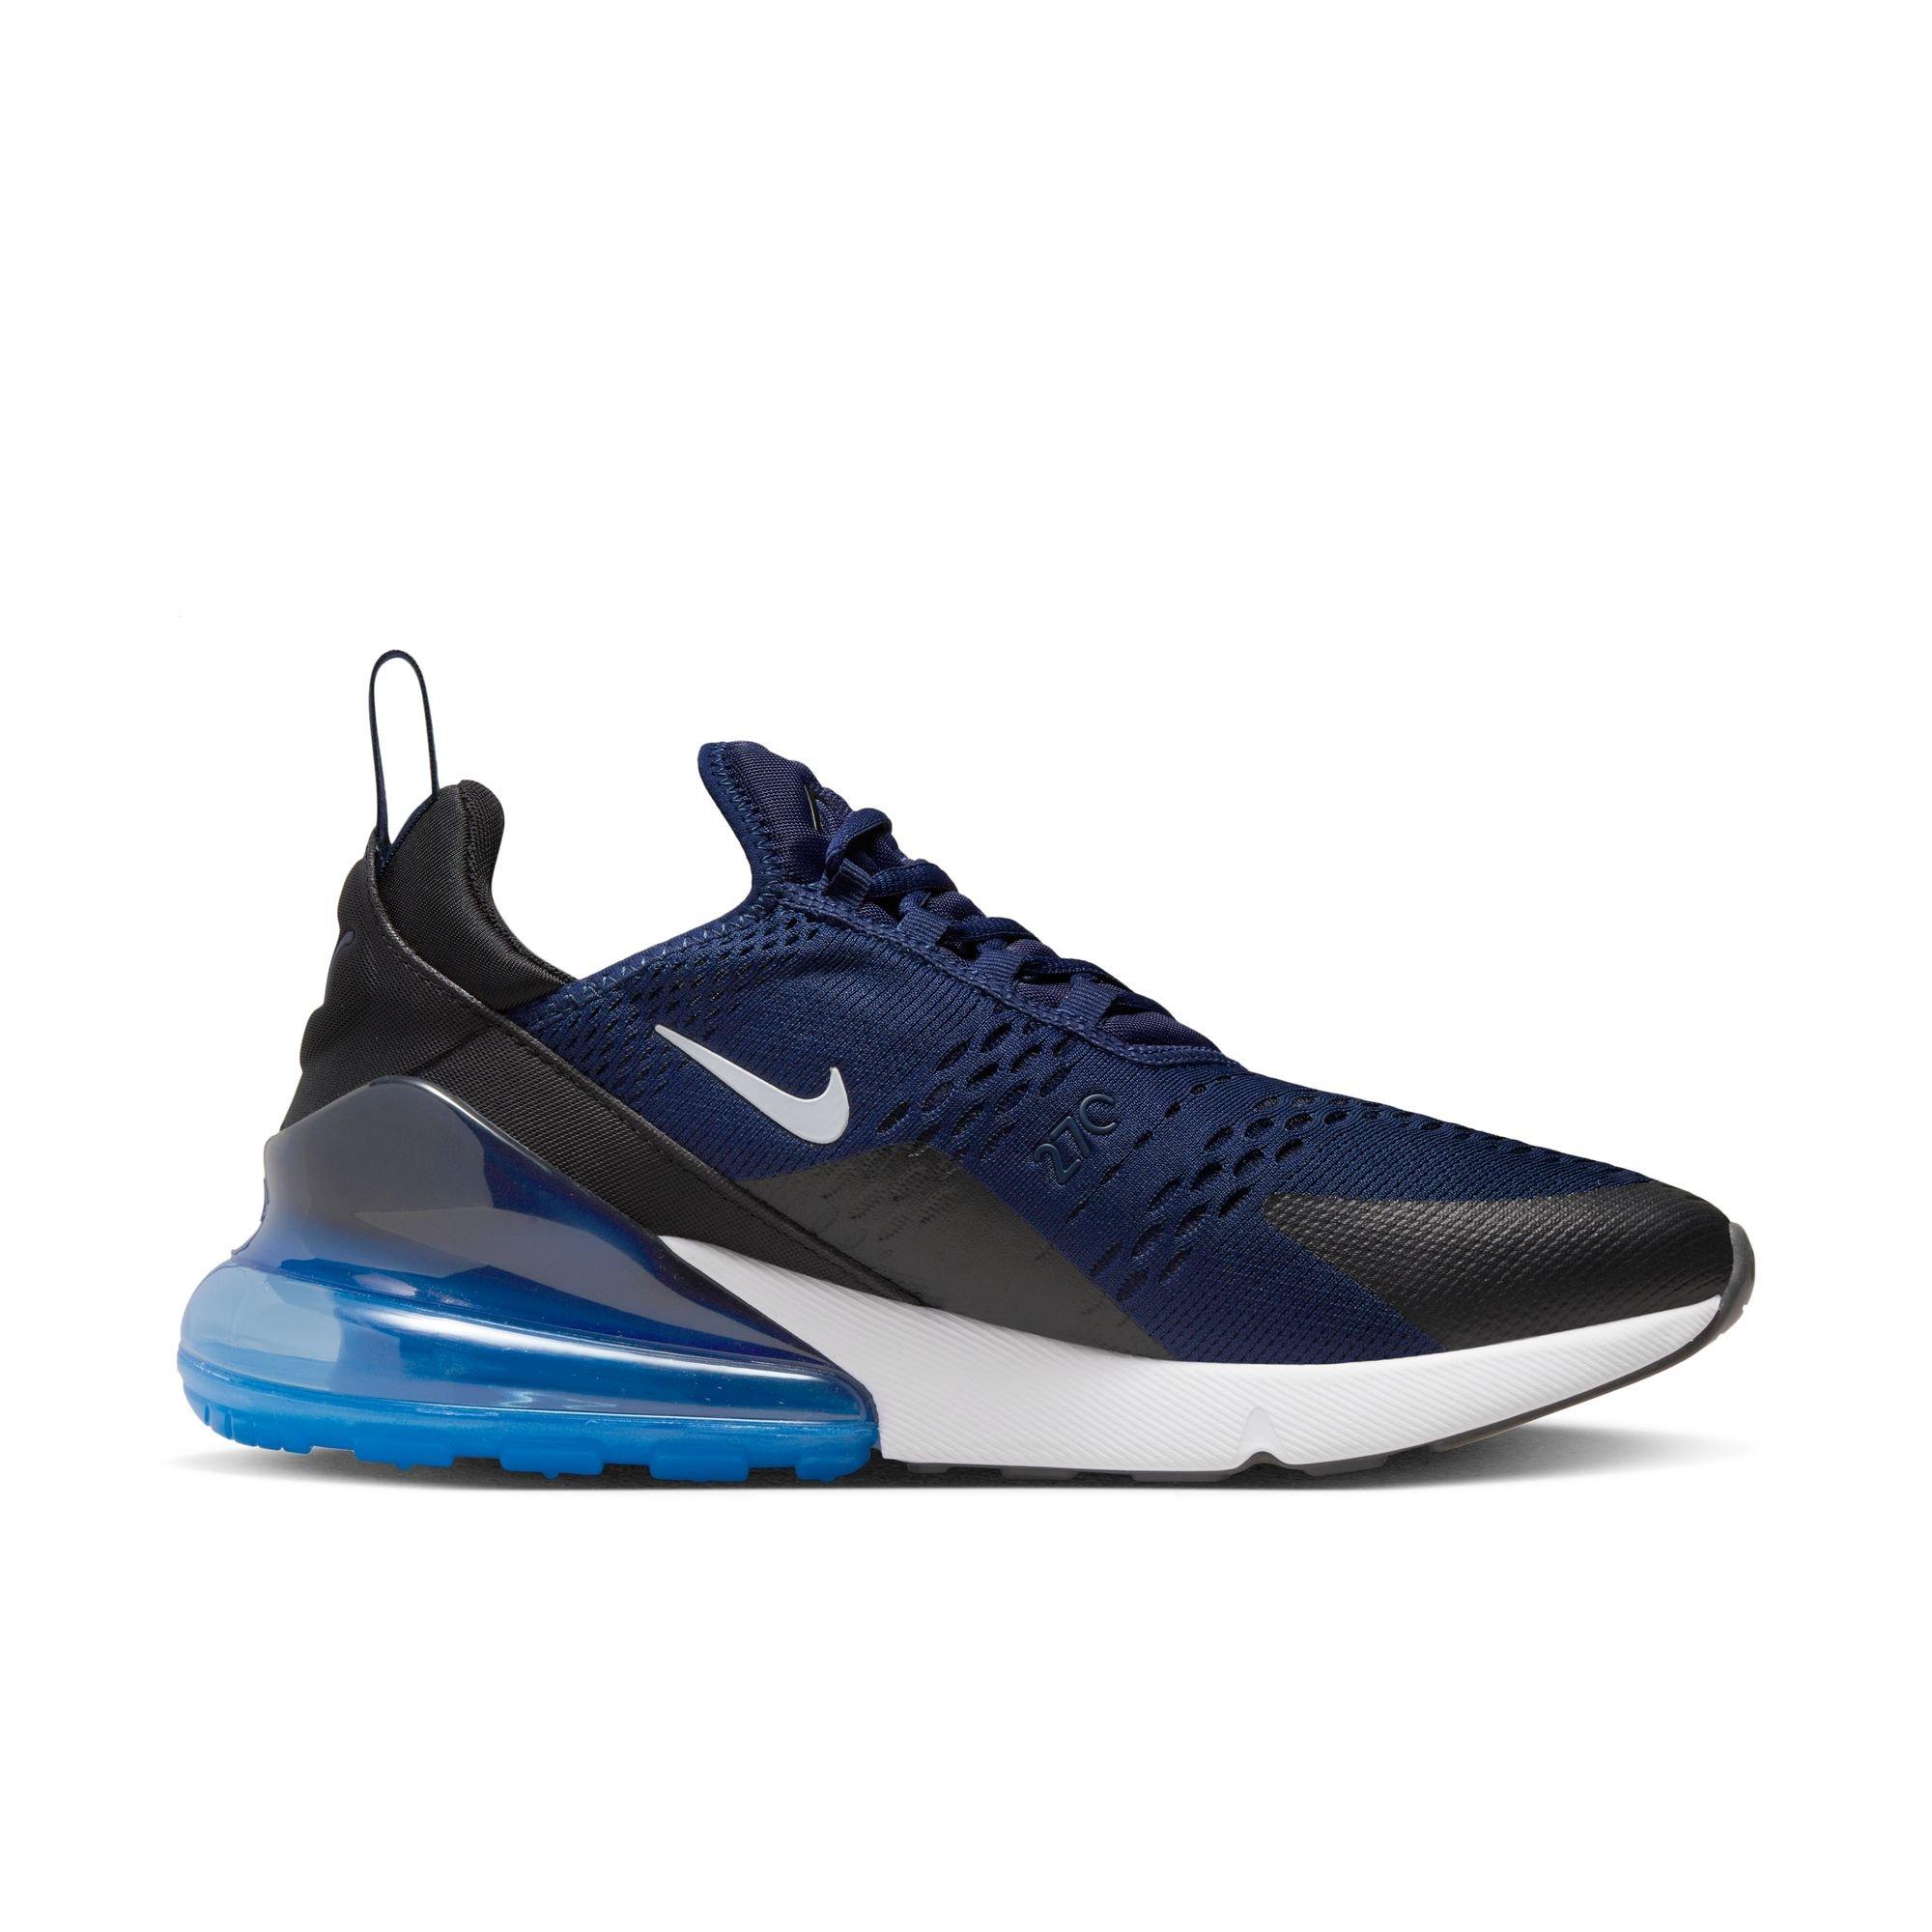 Nike Air Max 270 sneakers in black/blue